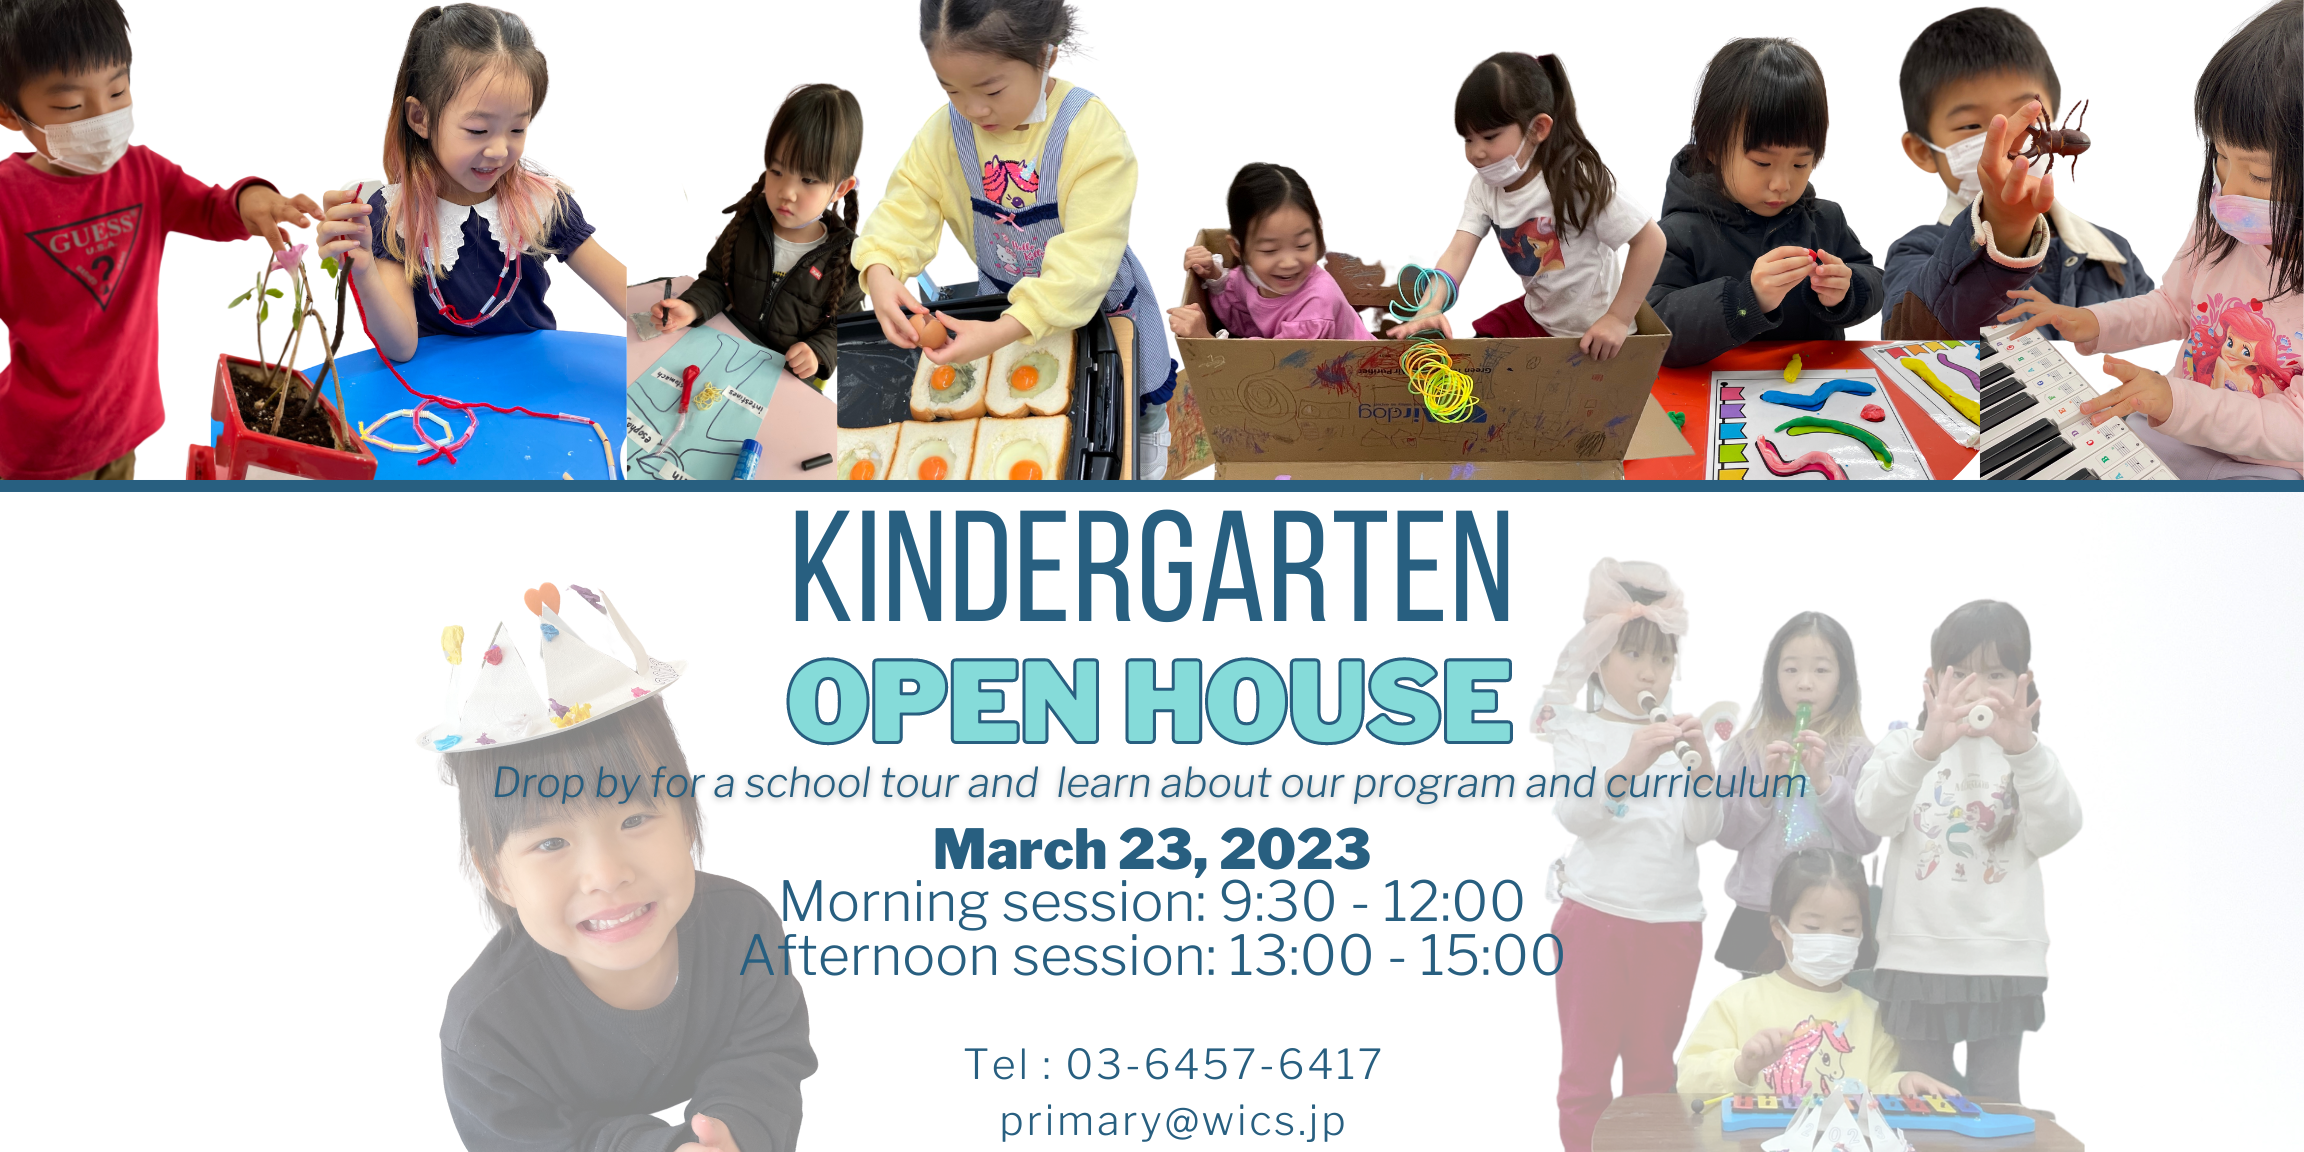 kindergarten open house